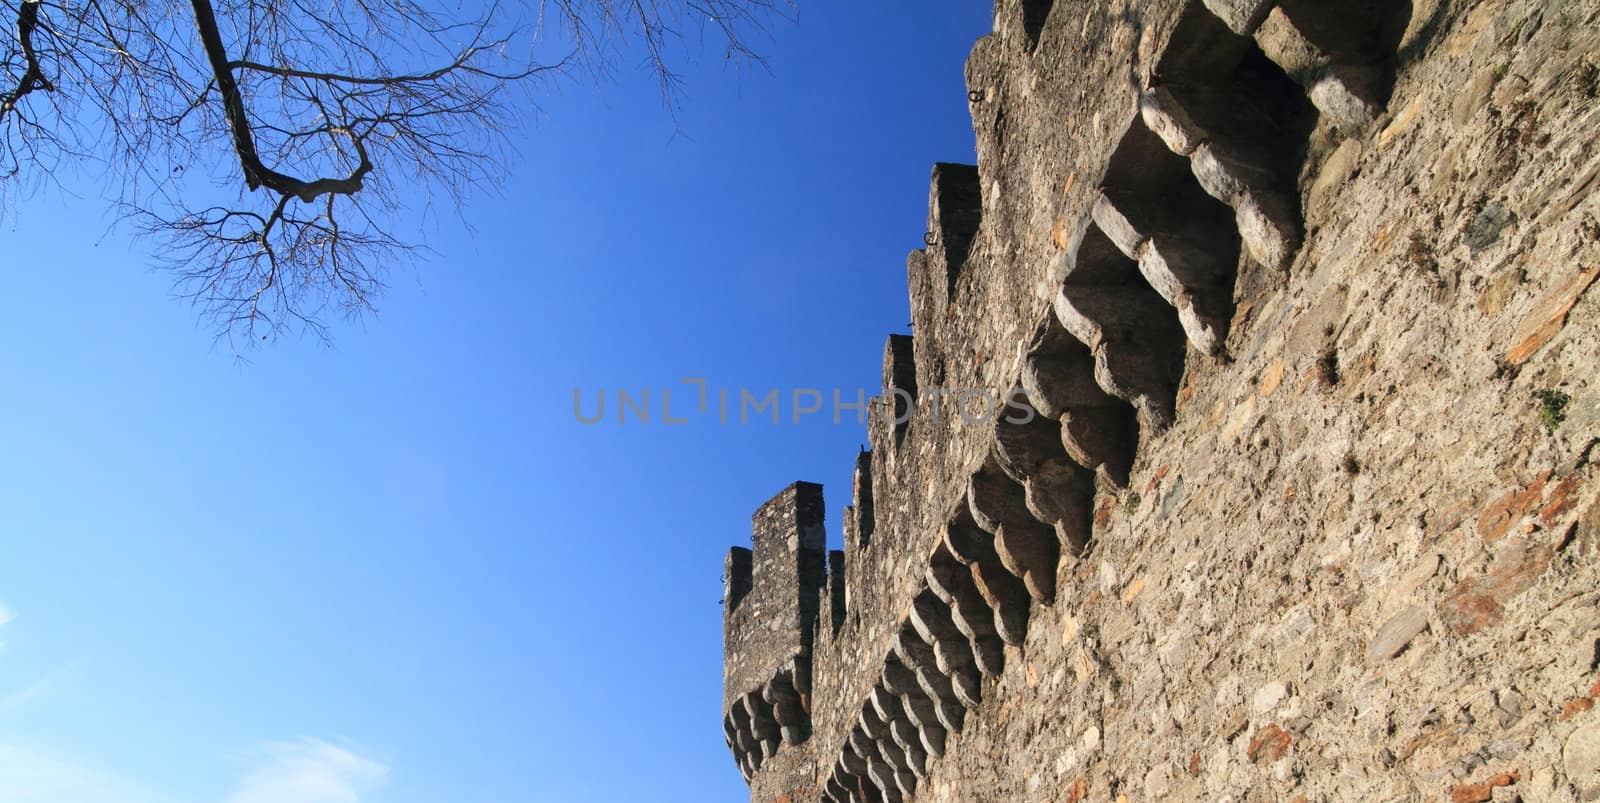 Bellinzona Castle